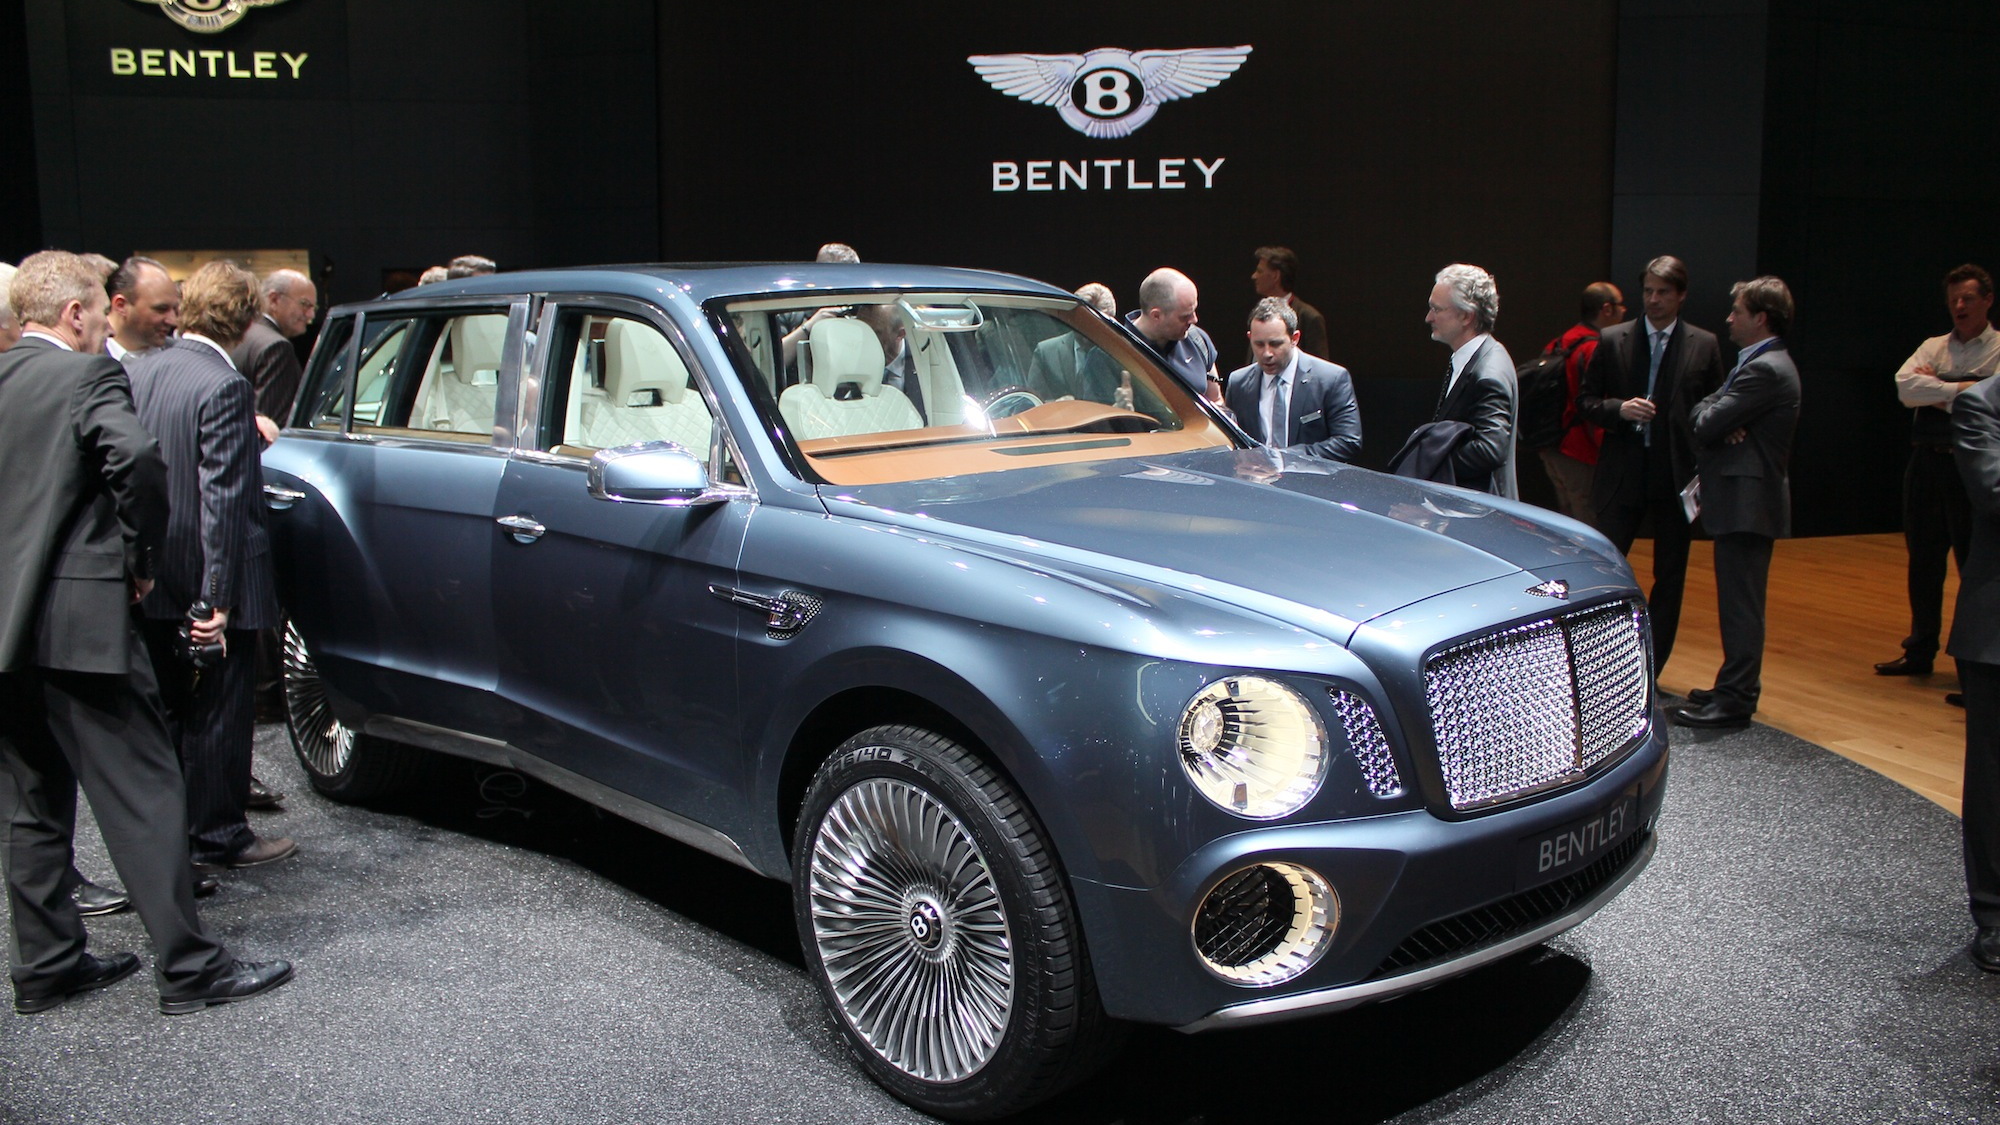 Bentley EXP 9 F Concept live photos, 2012 Geneva Motor Show